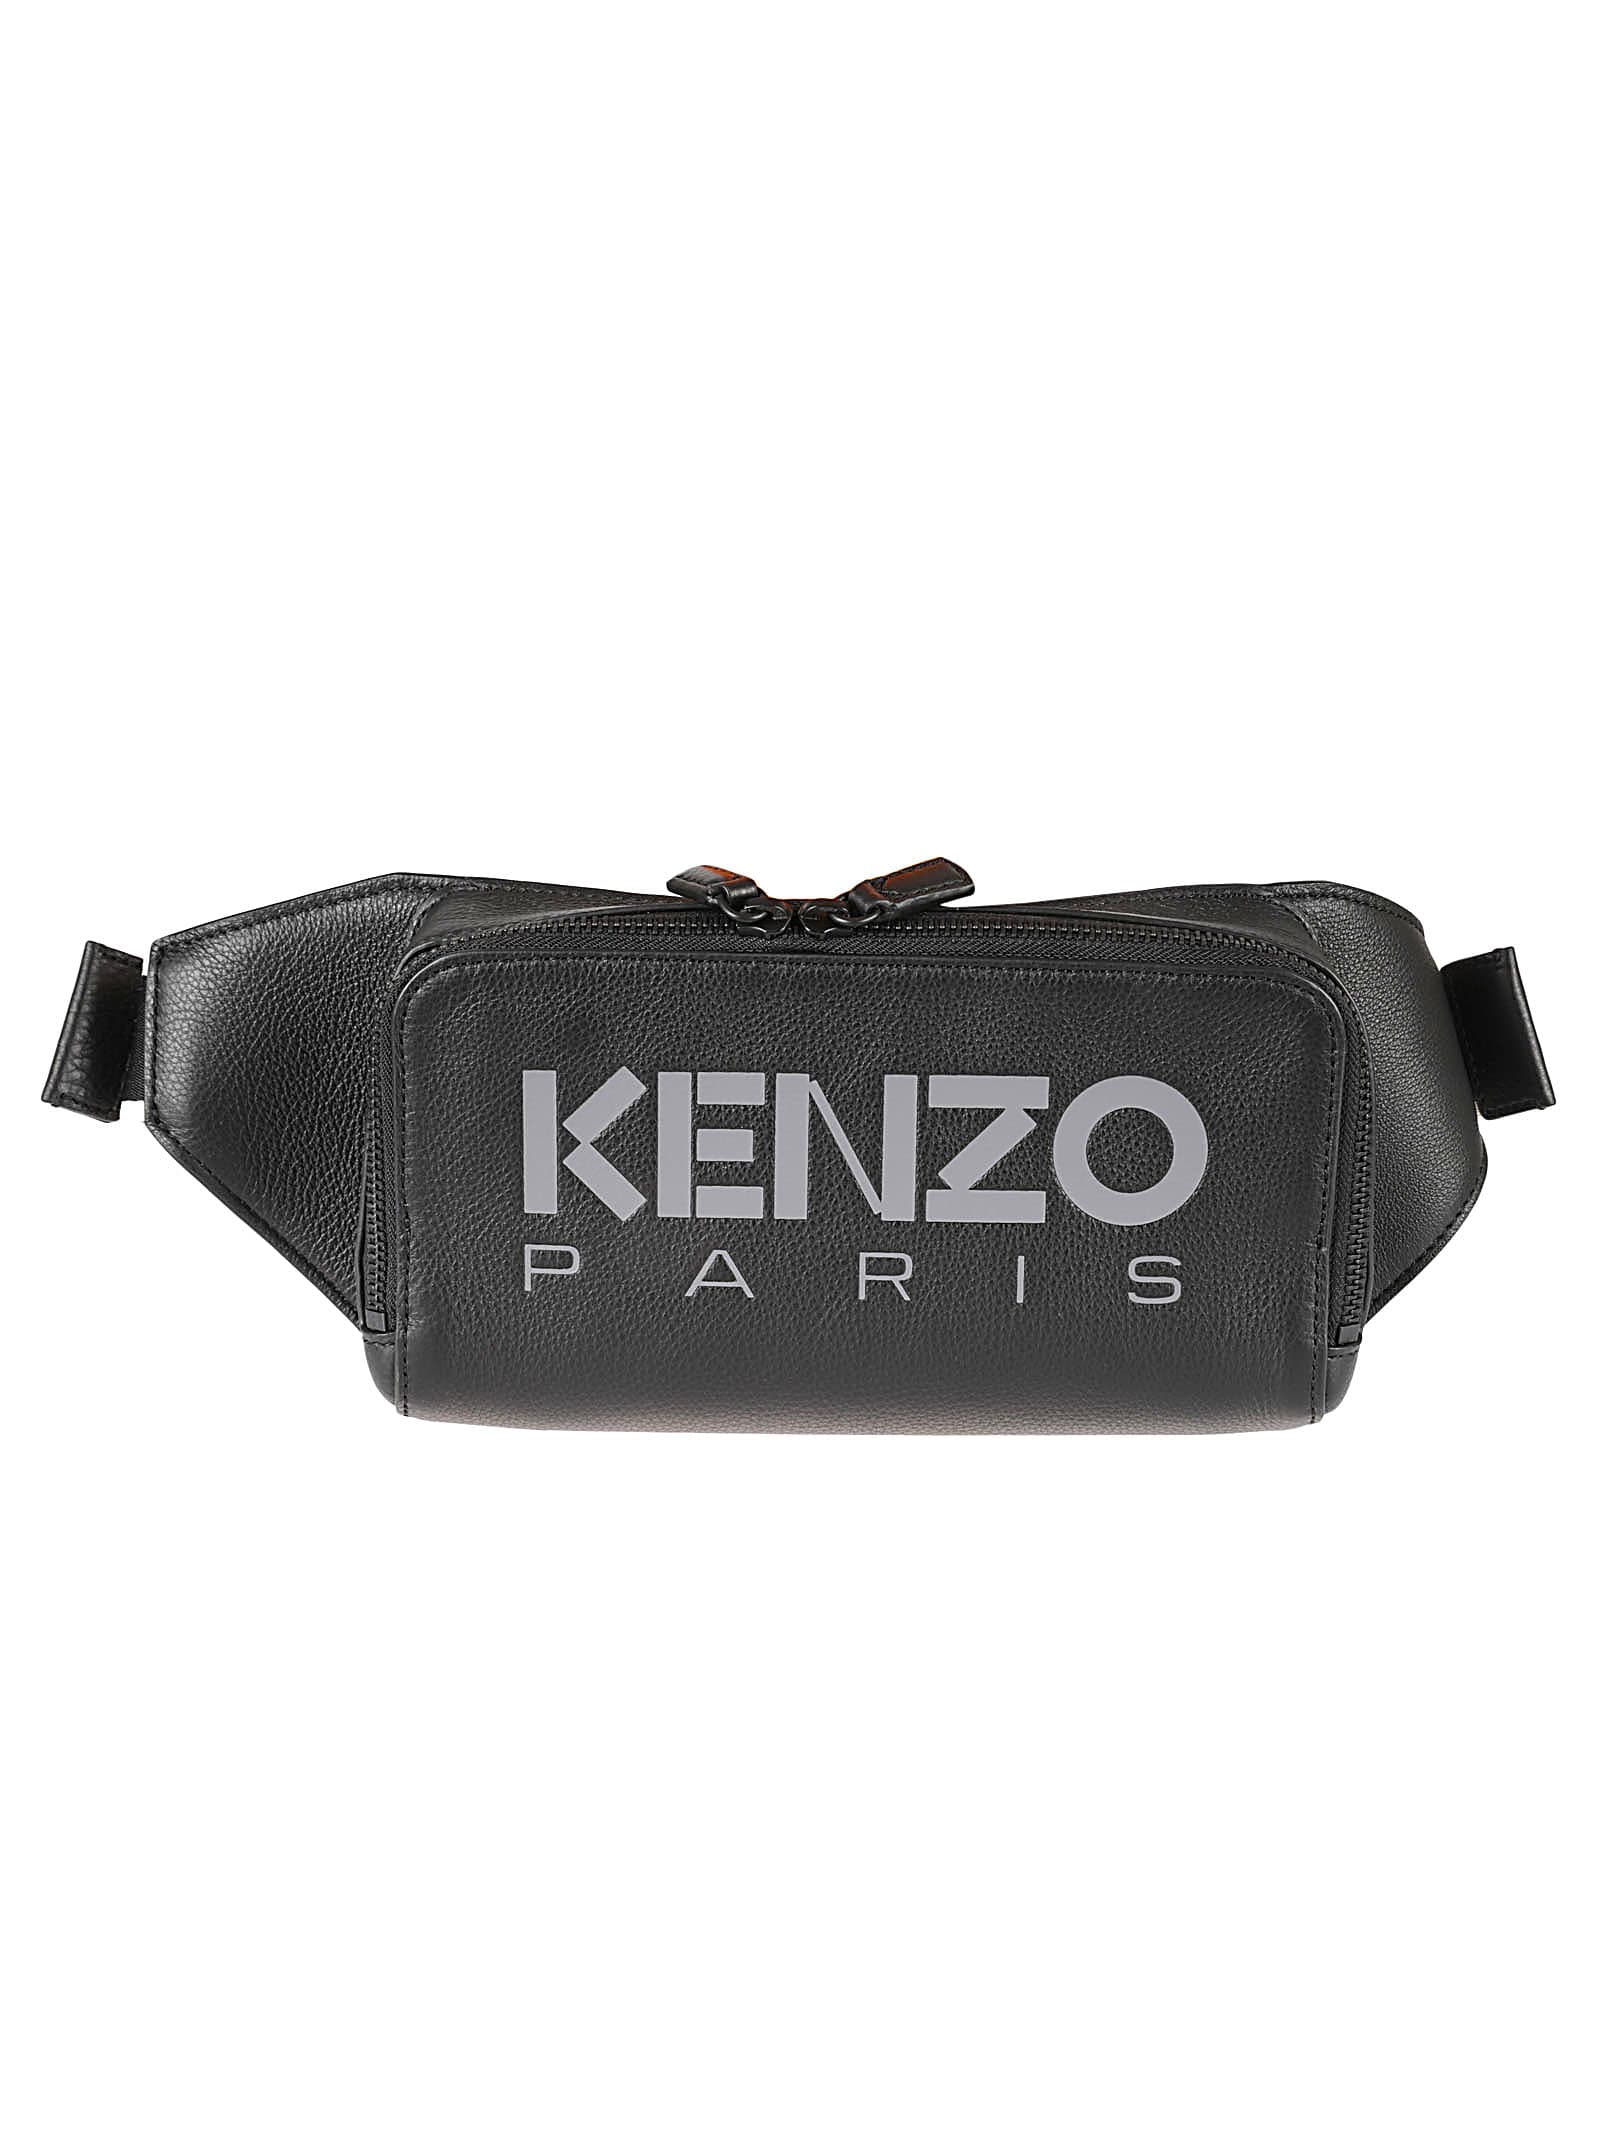 Kenzography Belt Bag